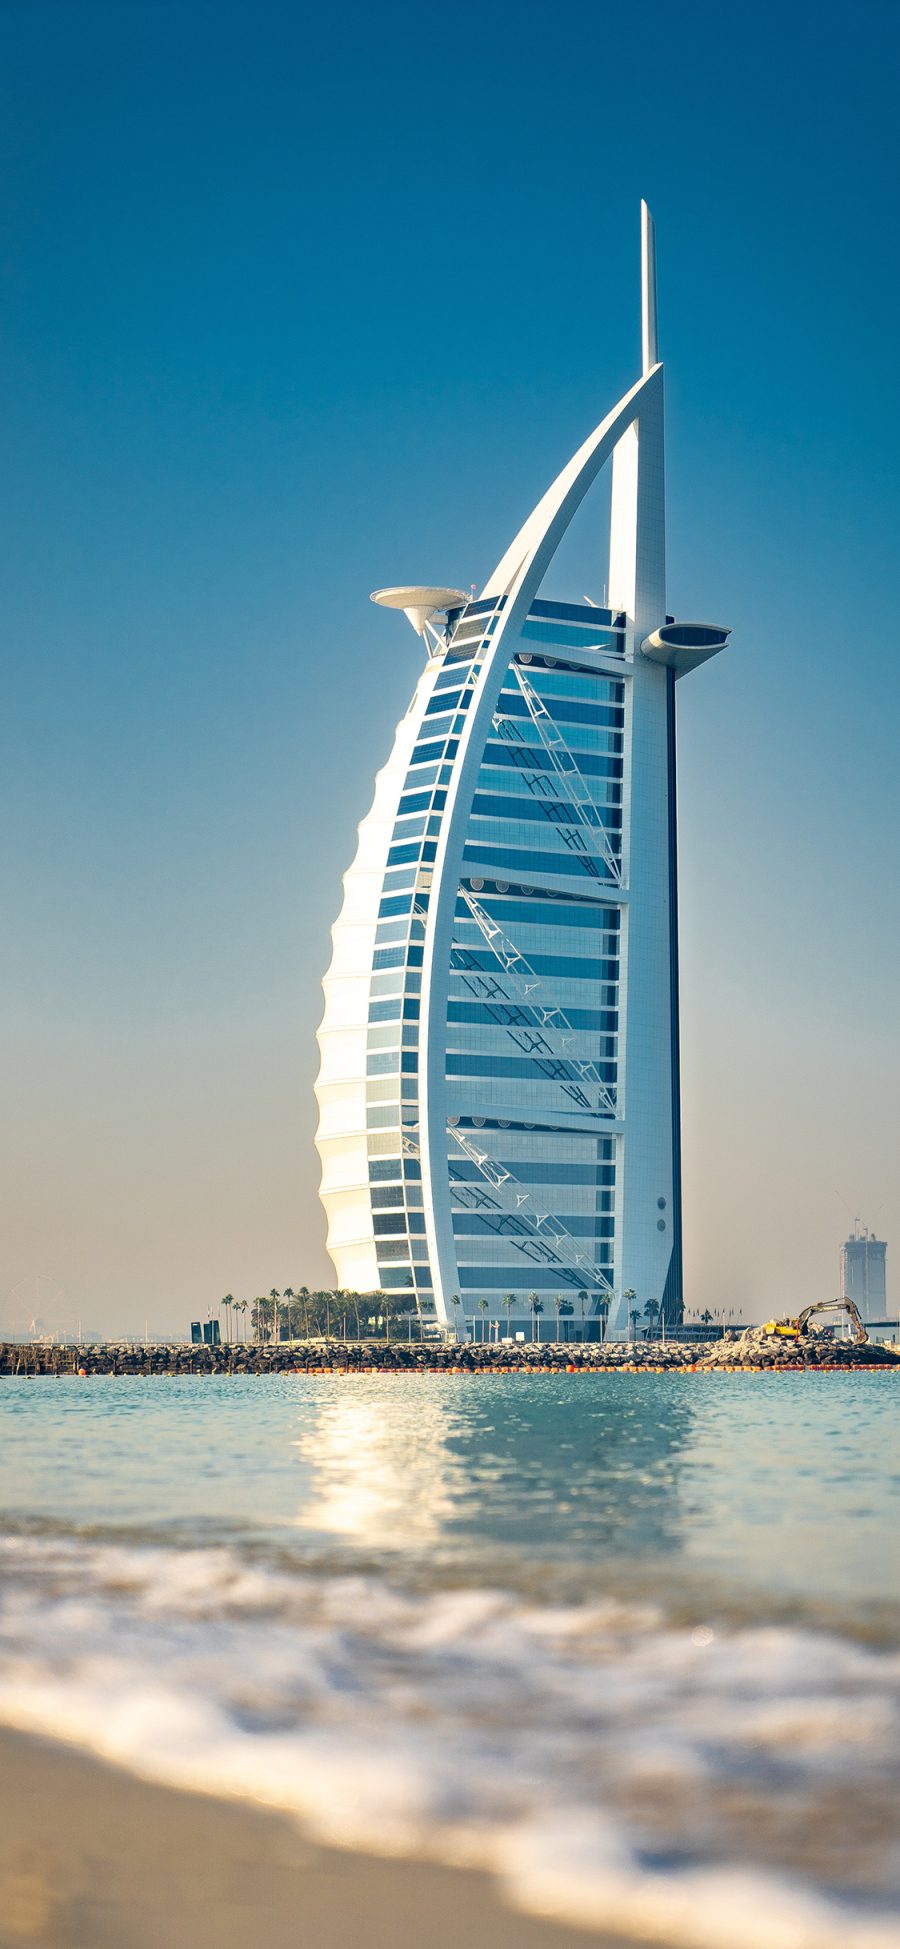 [2436×1125]迪拜 人工岛 海岸 帆船酒店 地标 苹果手机壁纸图片